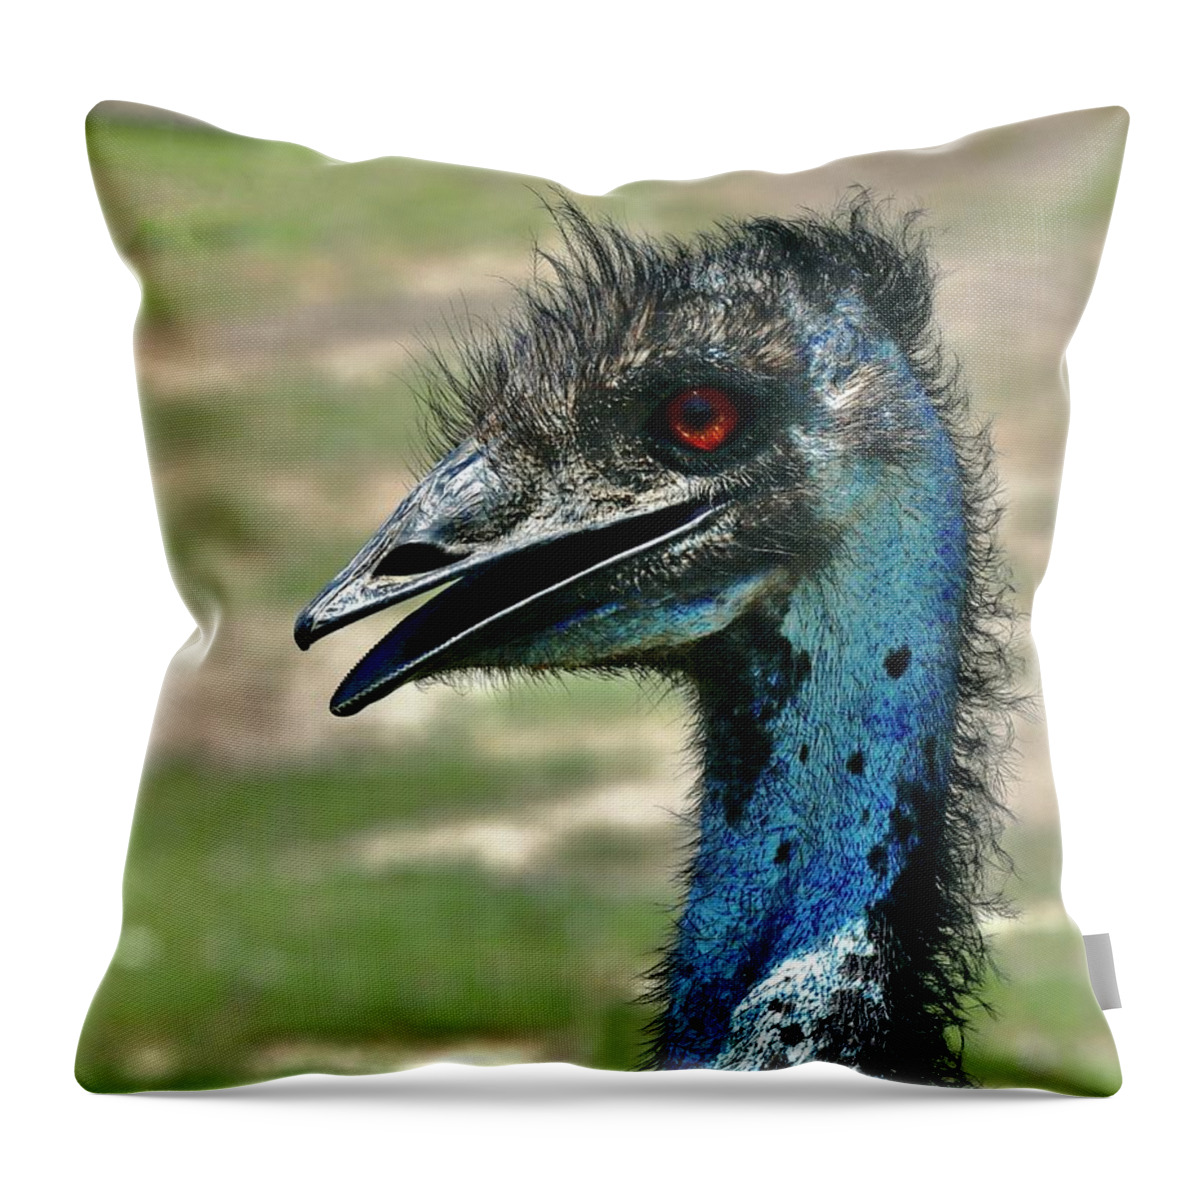 Emu Throw Pillow featuring the photograph Emu by Sarah Lilja